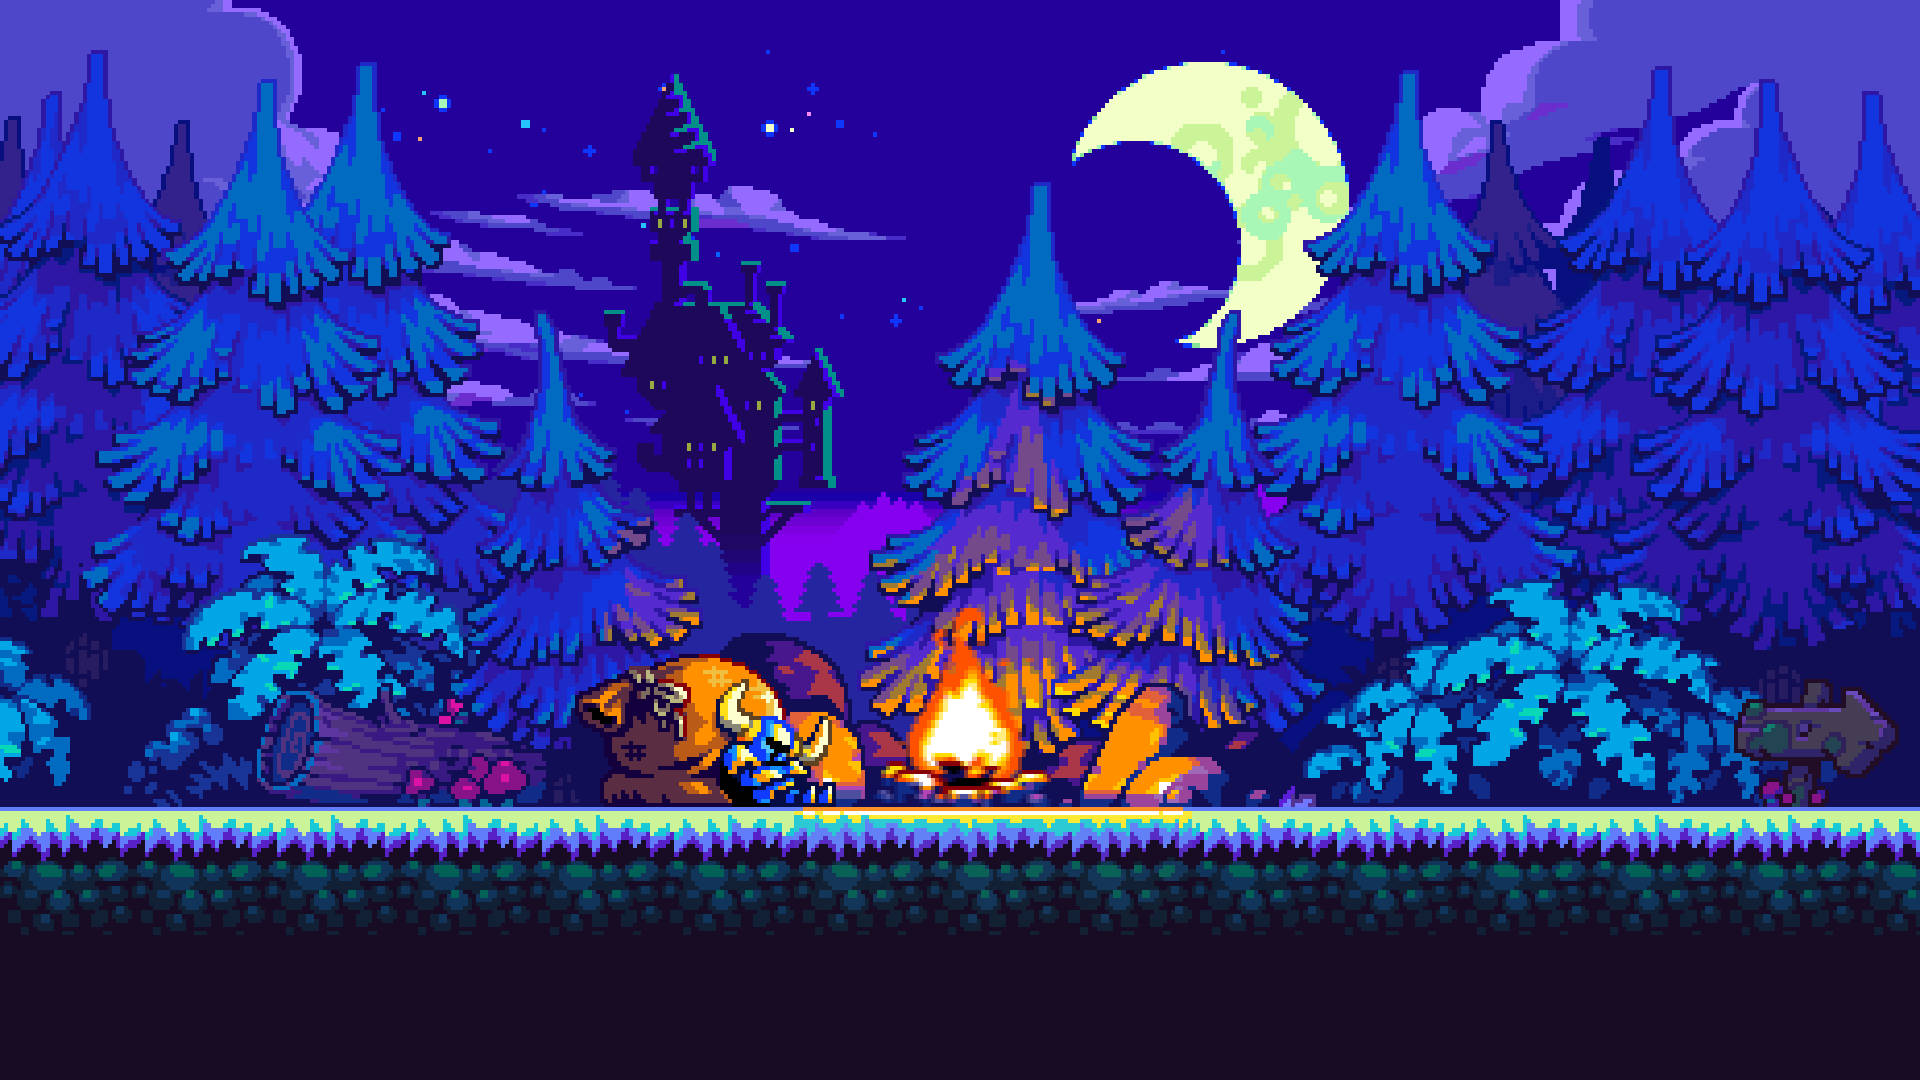 Shovel Knight In Dark Forest Background